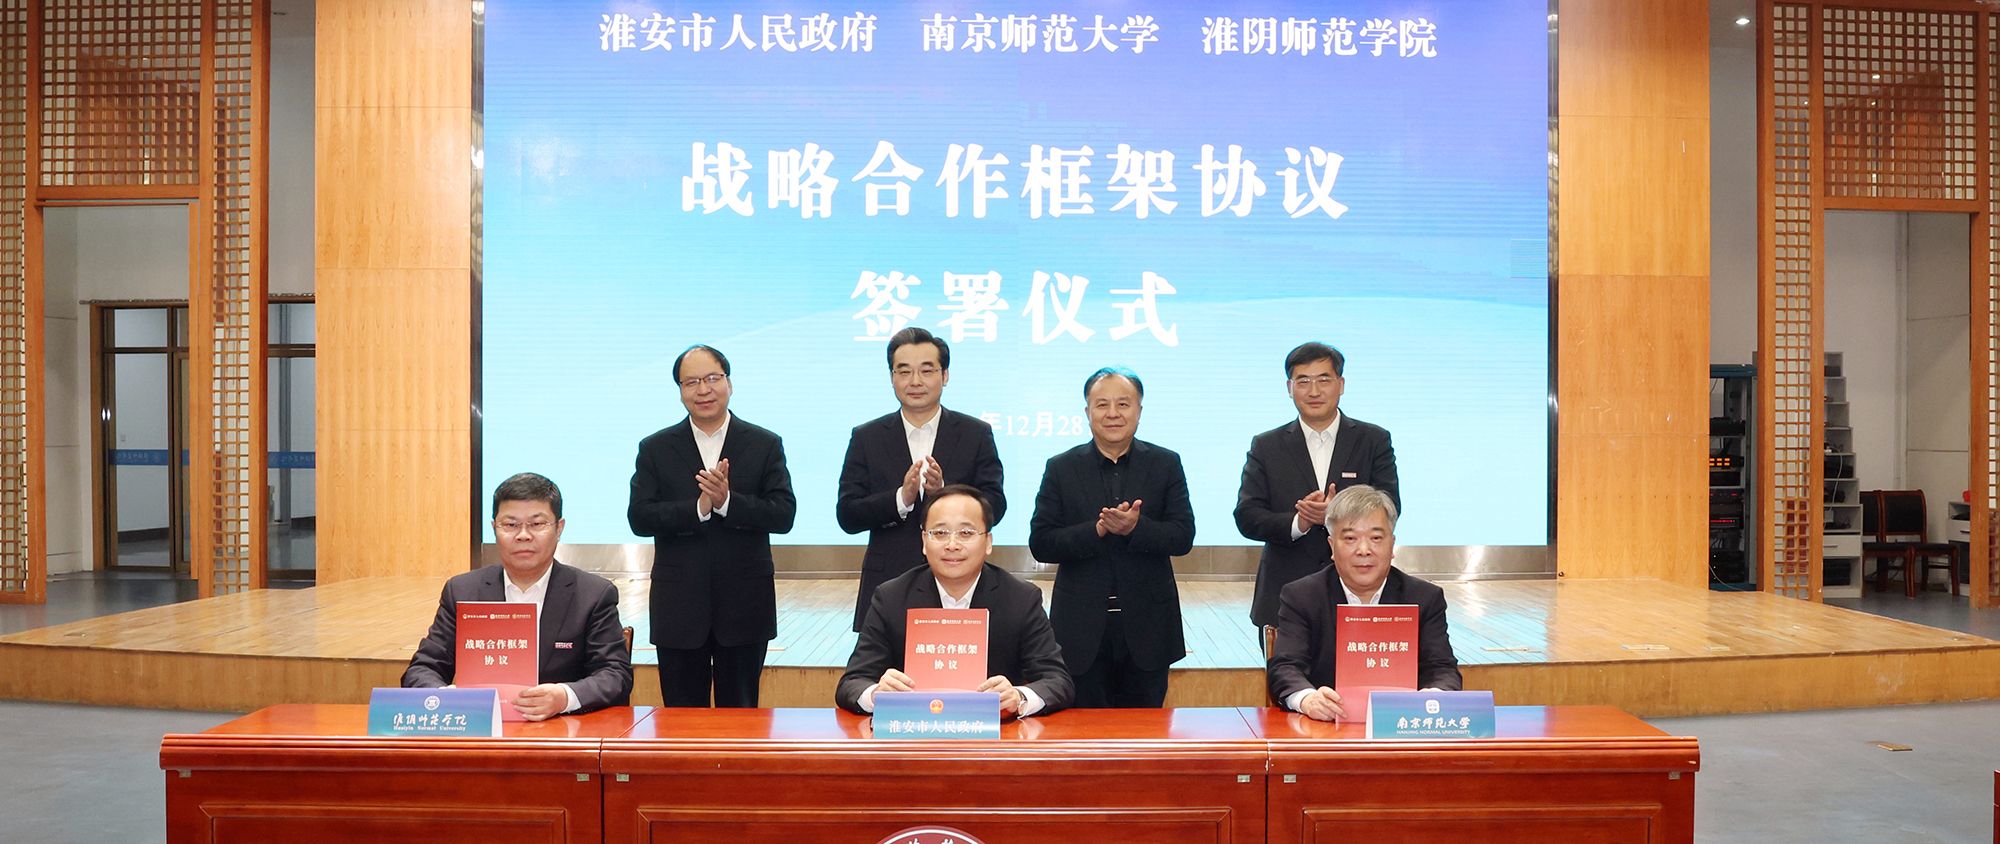 77779193永利官网与淮安市人民政府、南京师范大学签署战略合作框架协议